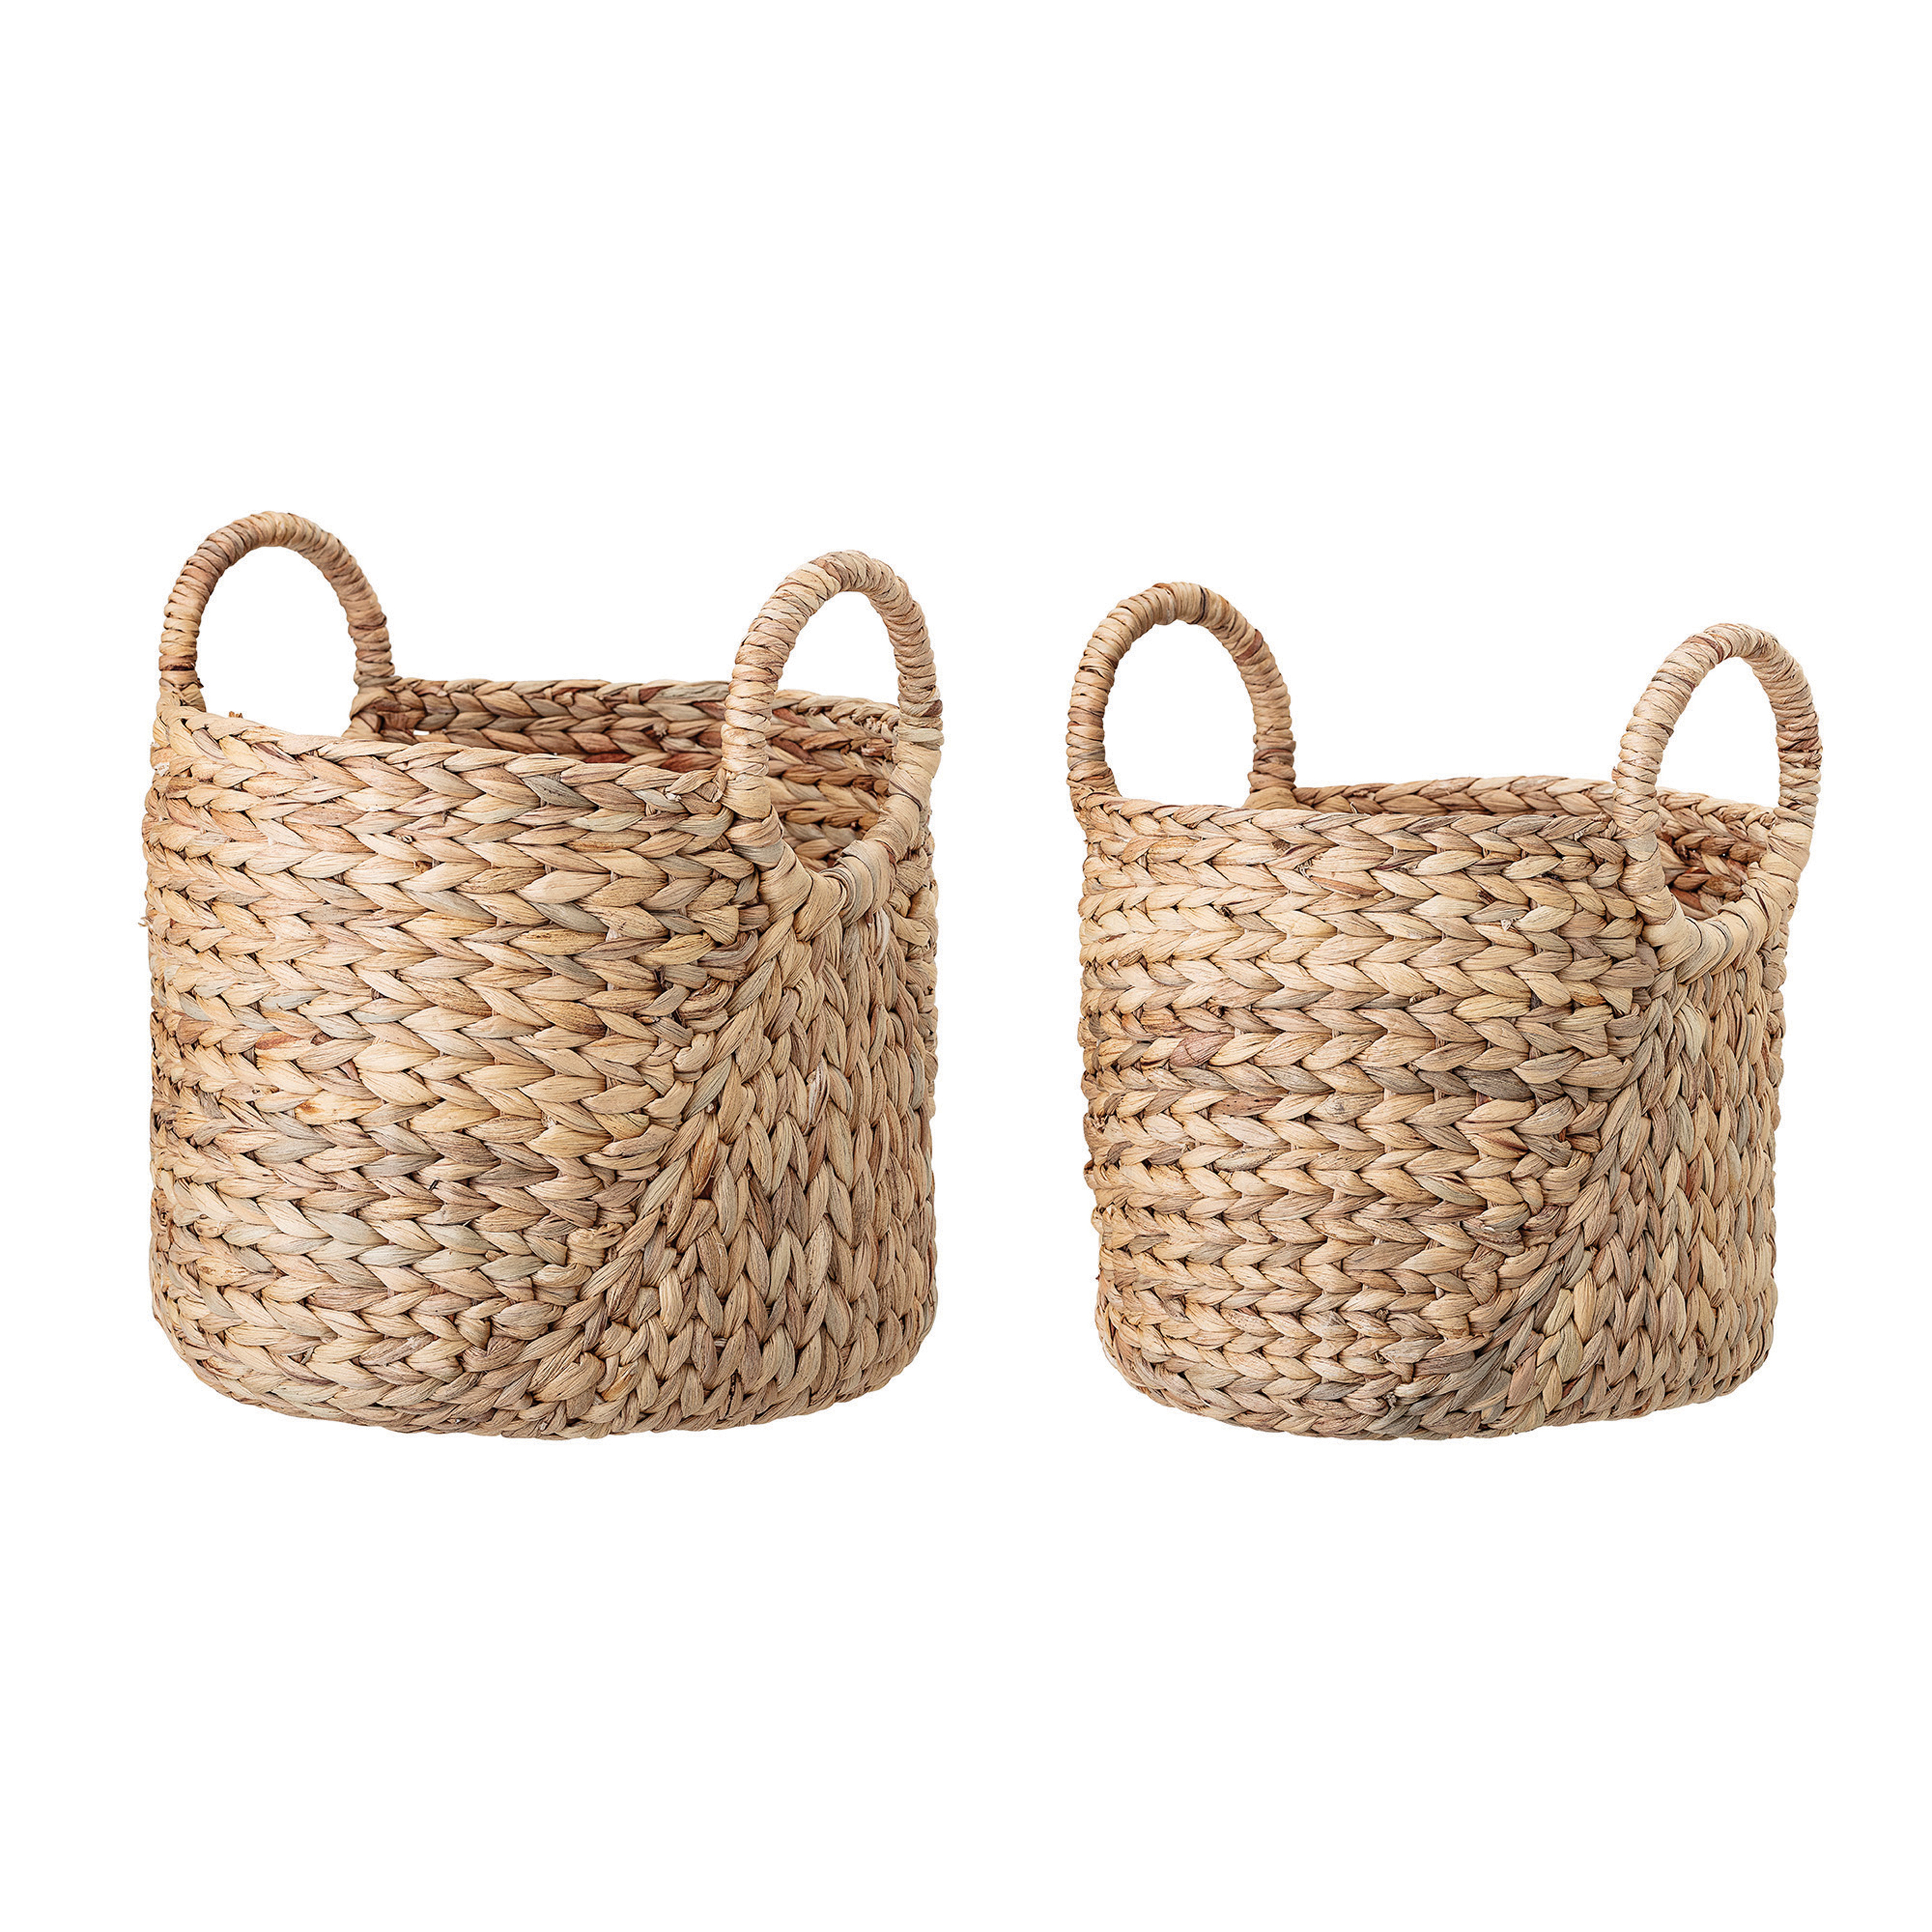 Handwoven Round Handle Seagrass Baskets, Set of 2 - Moss & Wilder